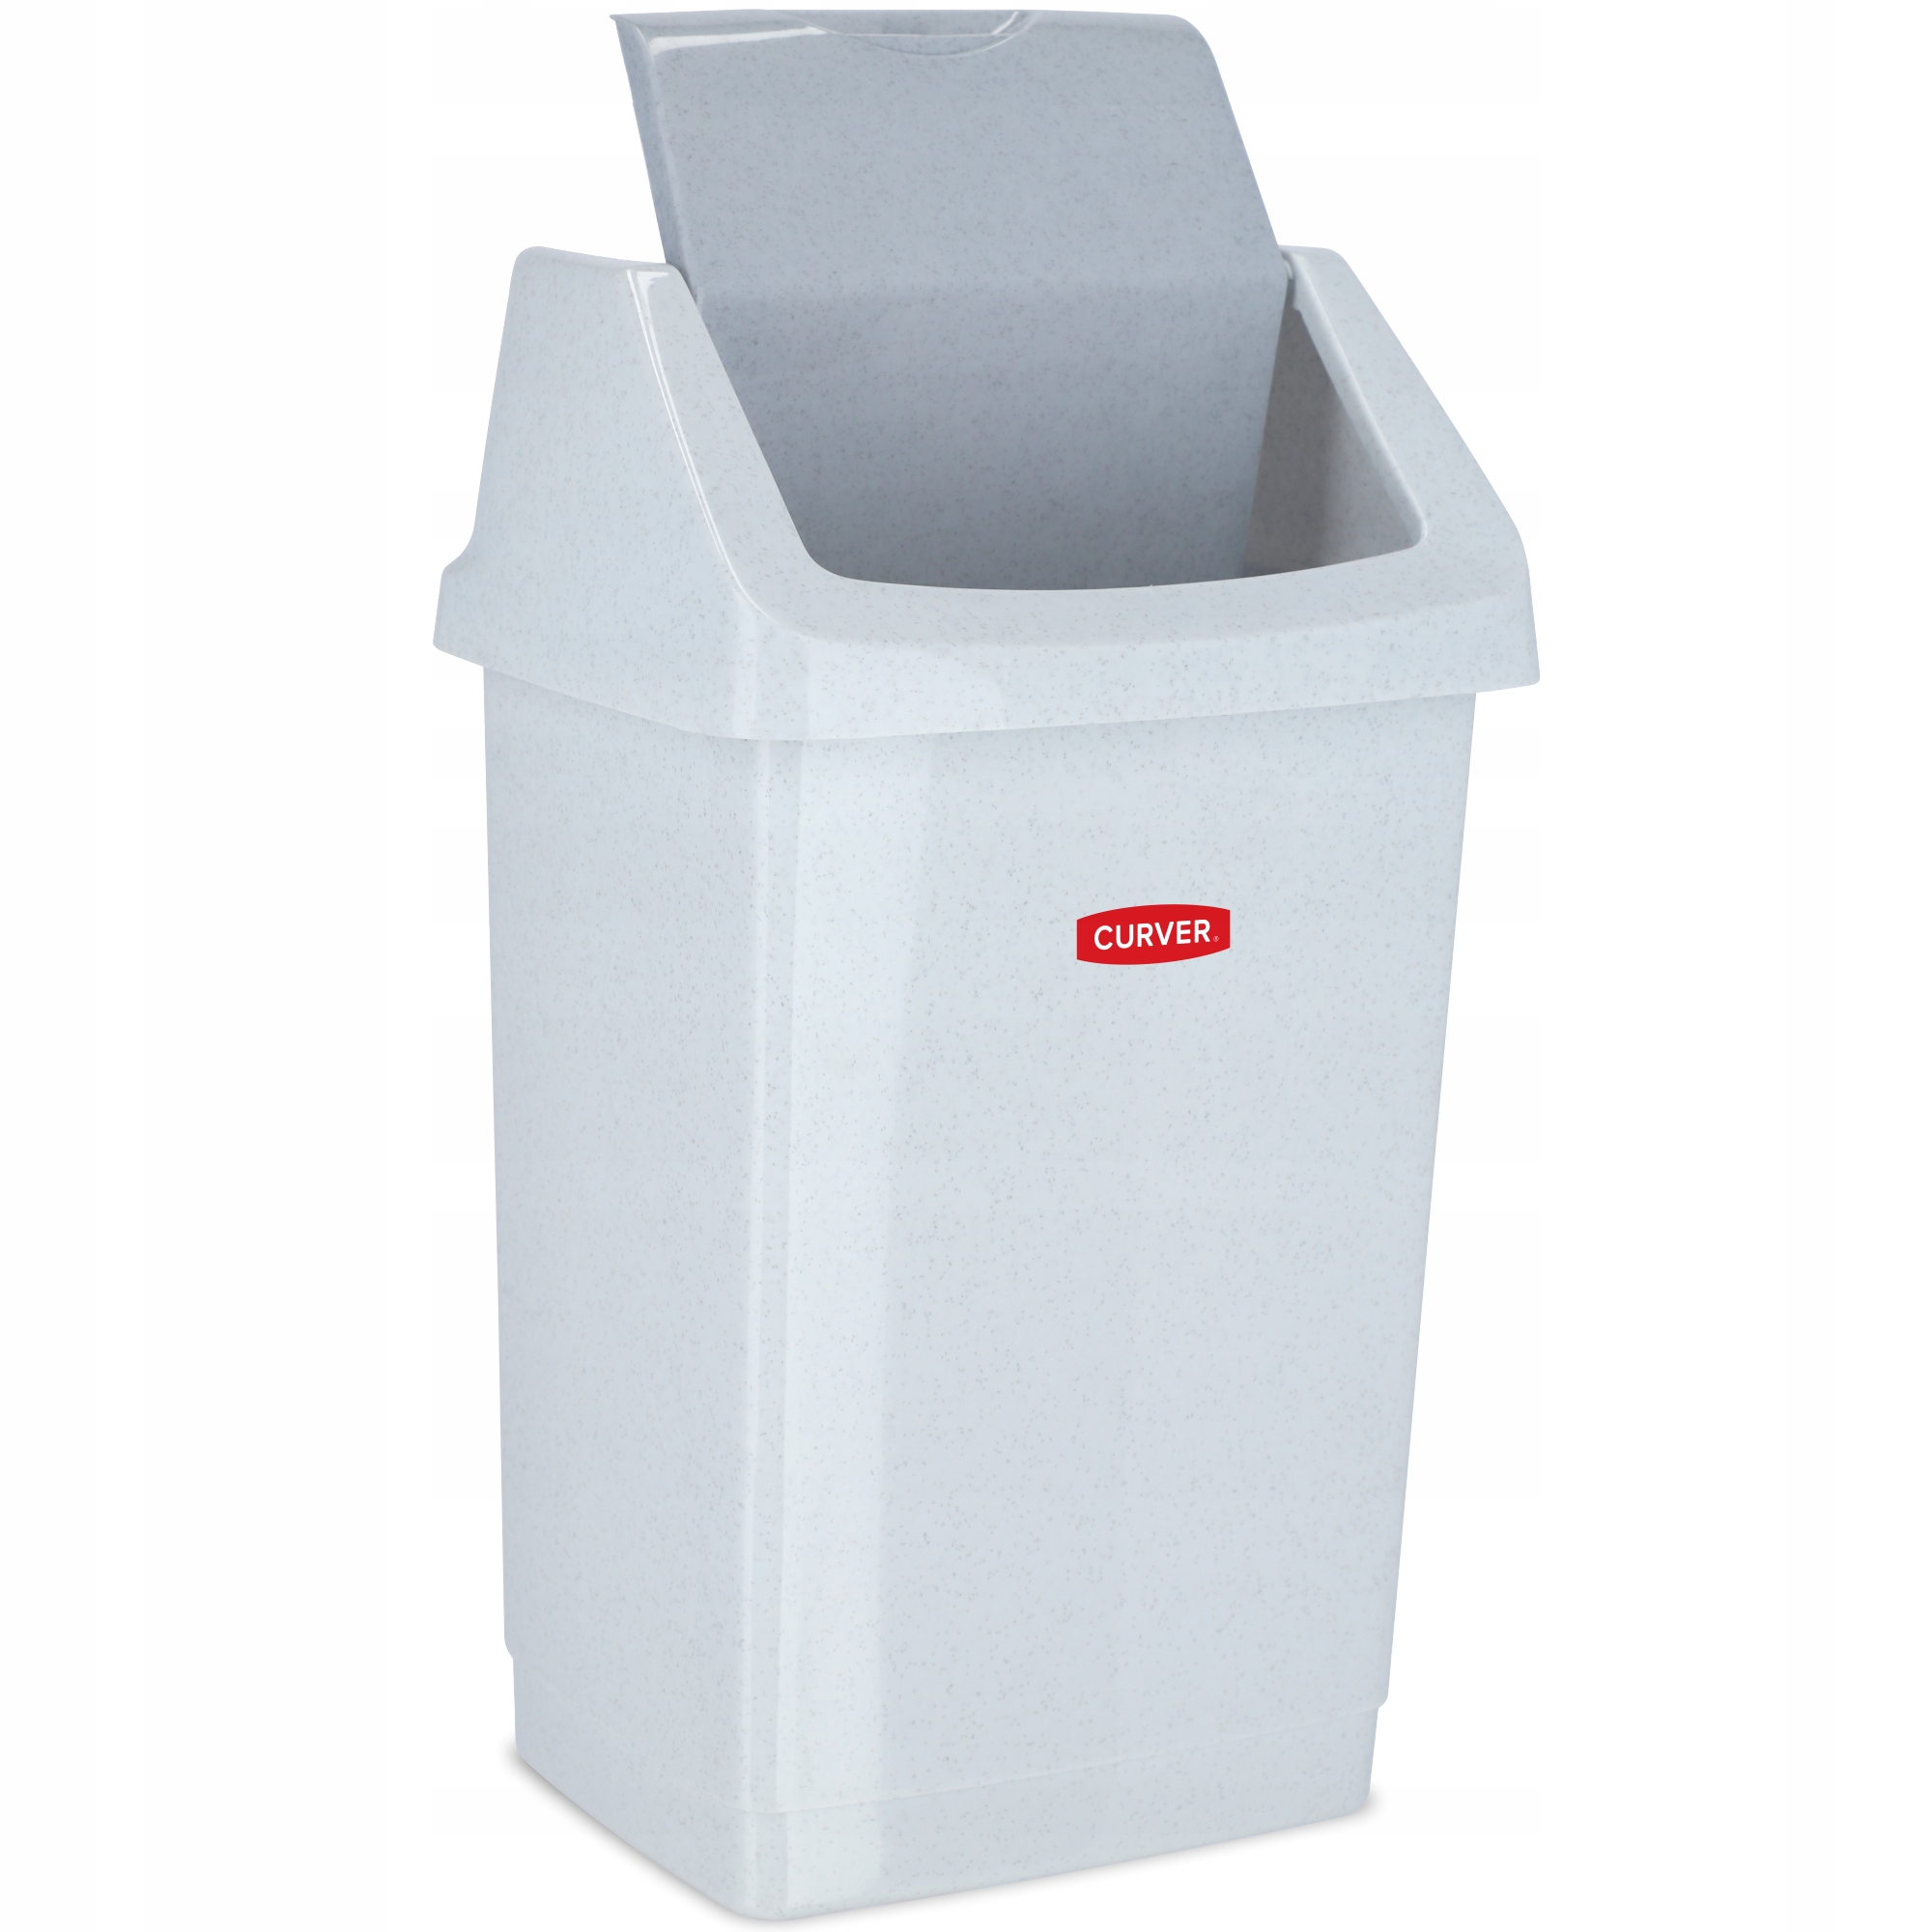 Curver мусорная корзина для кухонного офиса 25l в   из .